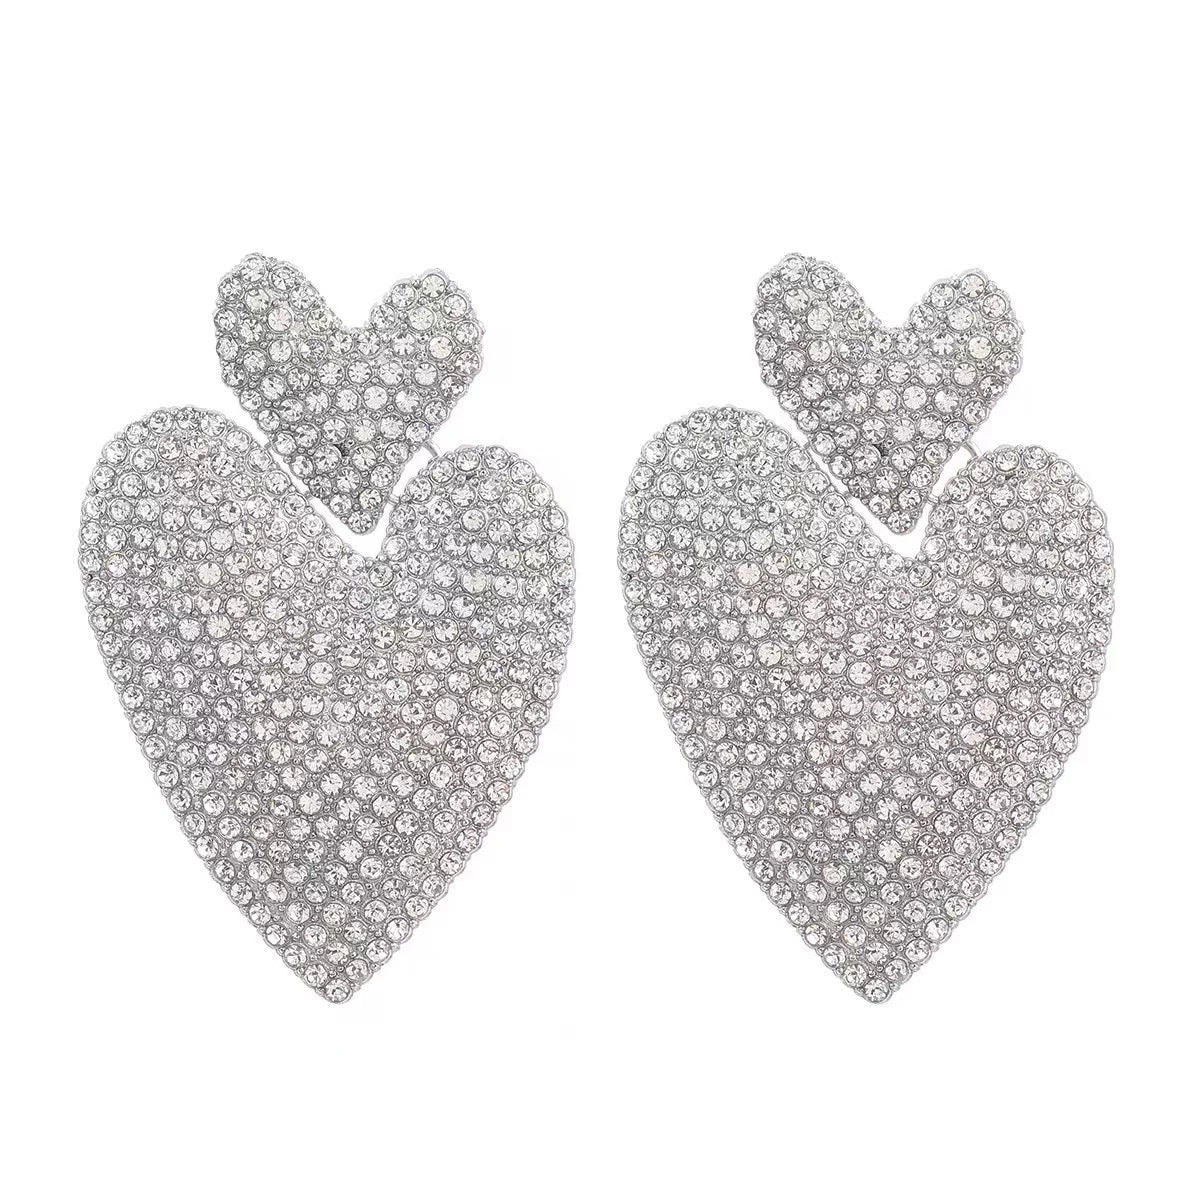 Wonka Heart Rhinestone Earrings